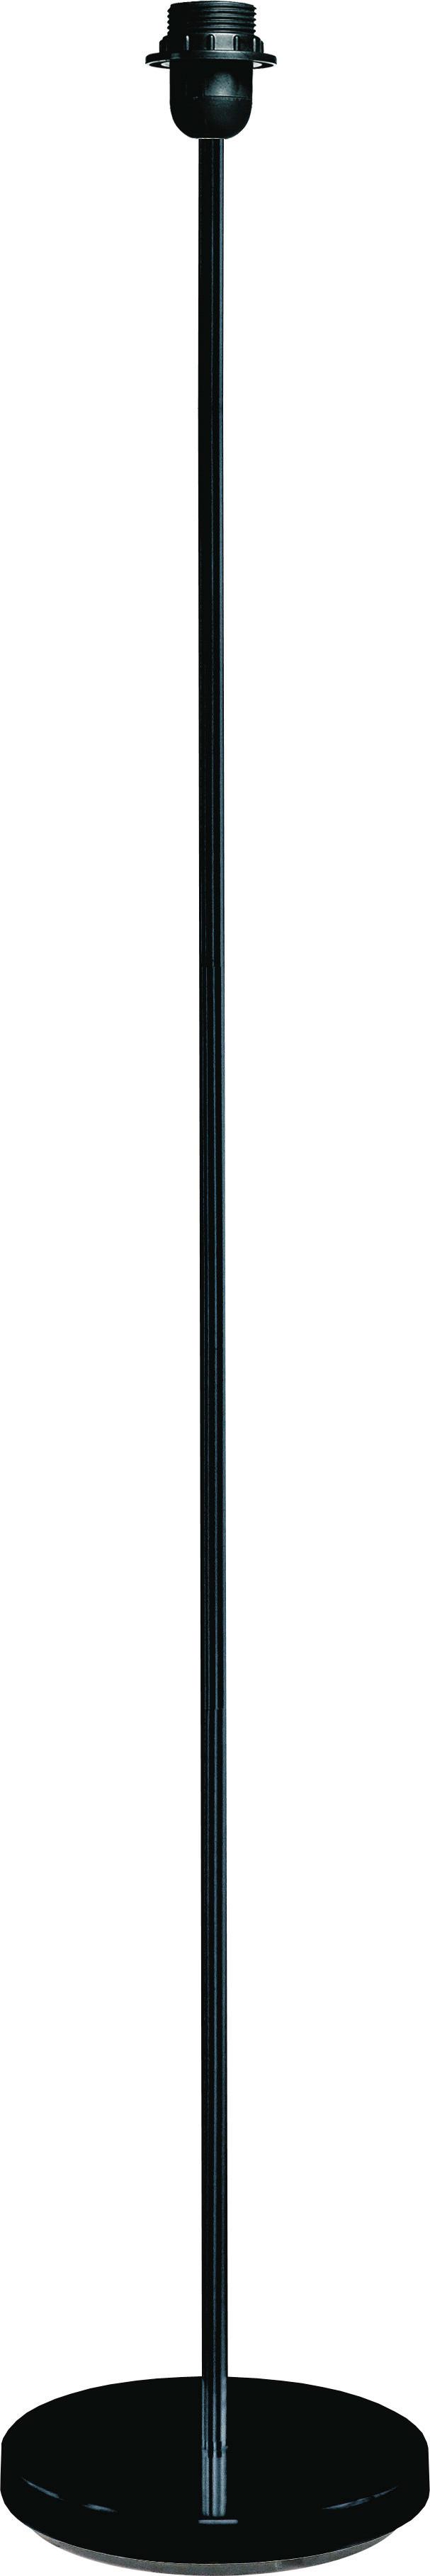 Leuchtenfuß Marc max. 60 Watt - Schwarz, Metall (25/135cm) - Modern Living